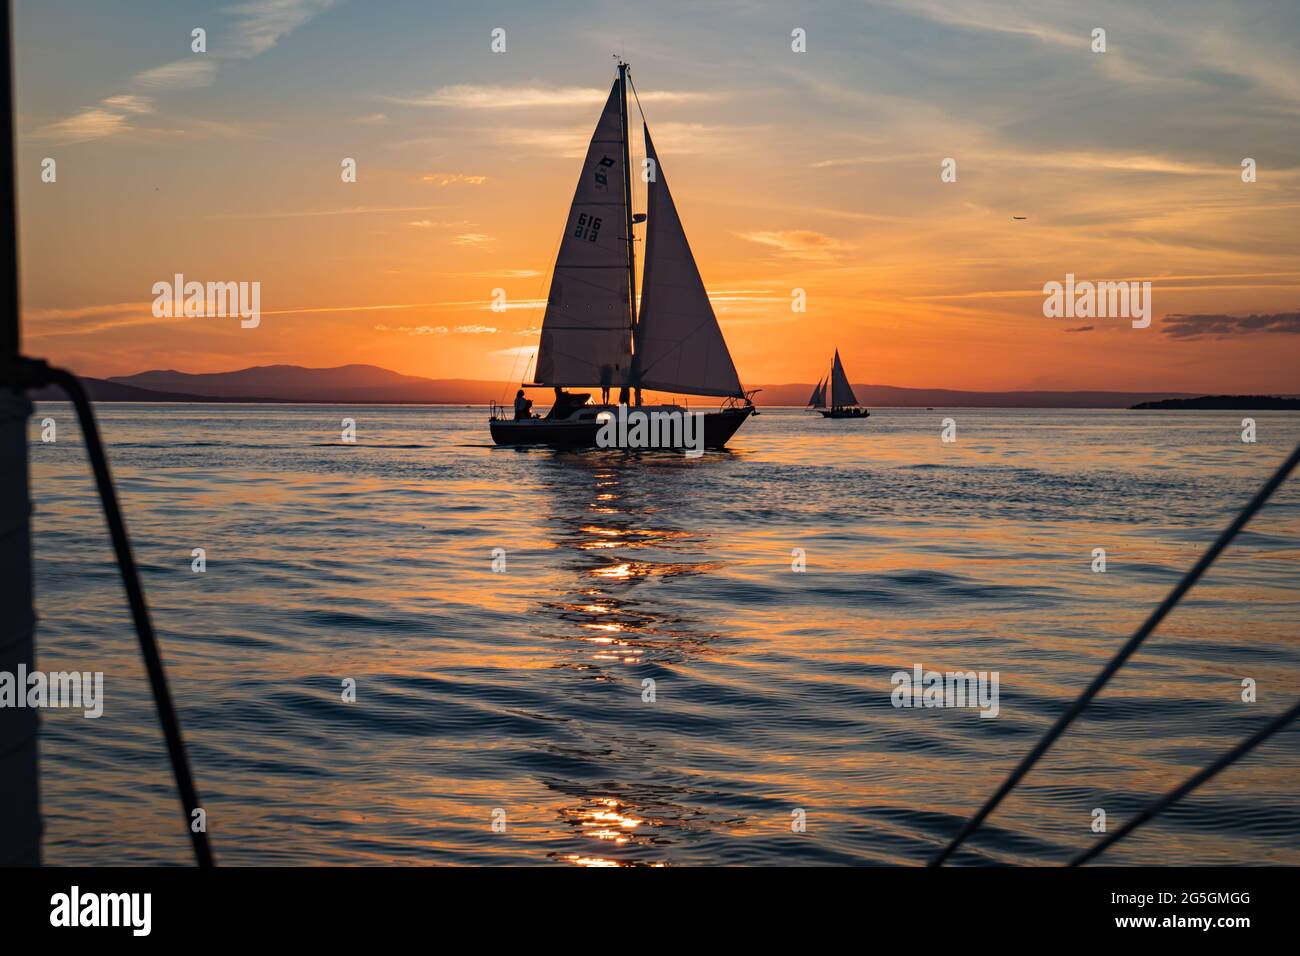 setting sun on Lake Champlain enjoyed by sail boats Stock Photo